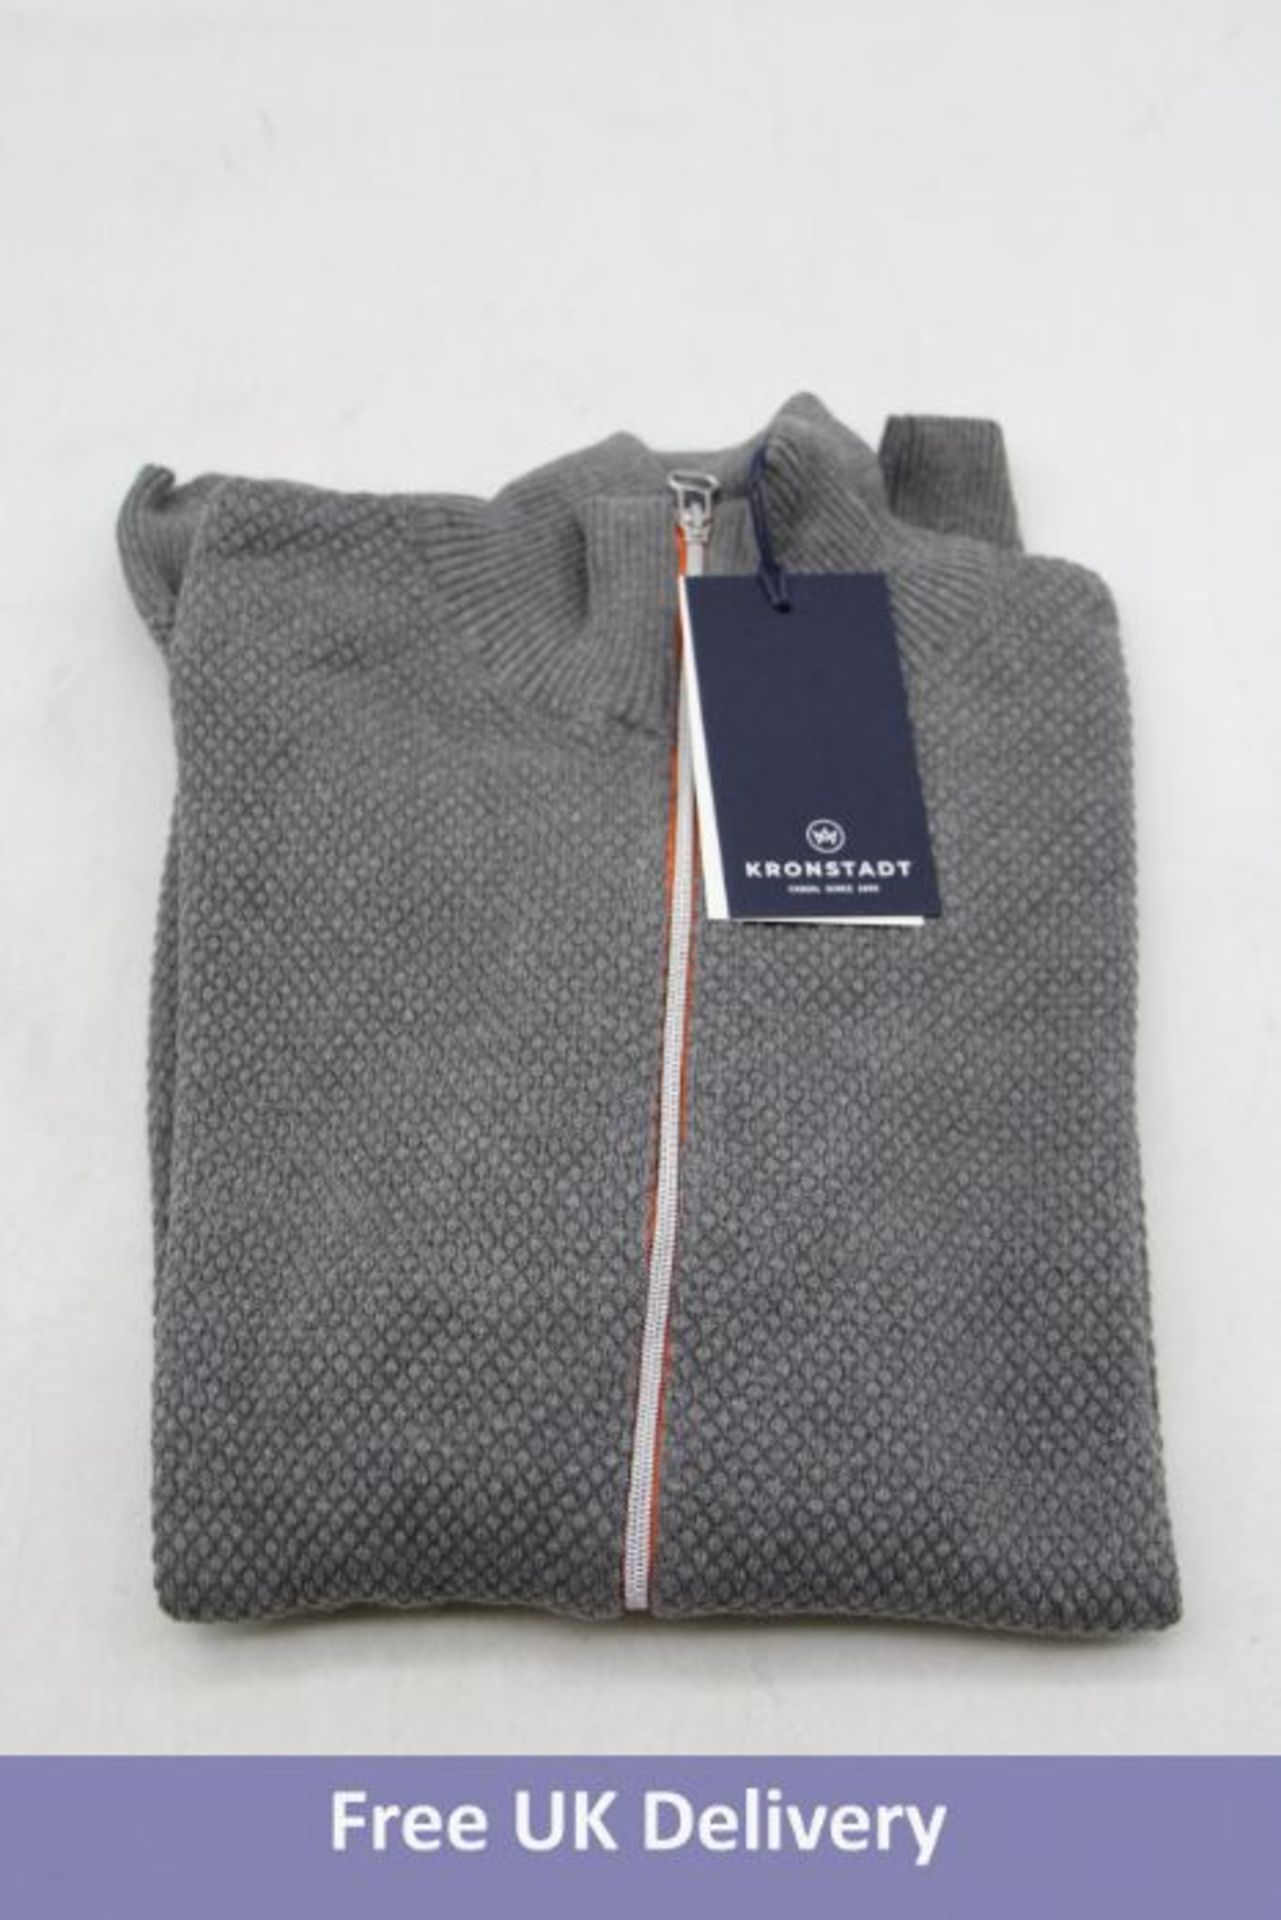 Four Kronstadt Erlk Zip Cardigan/Sweater, Grey/Orange Zip, Size L